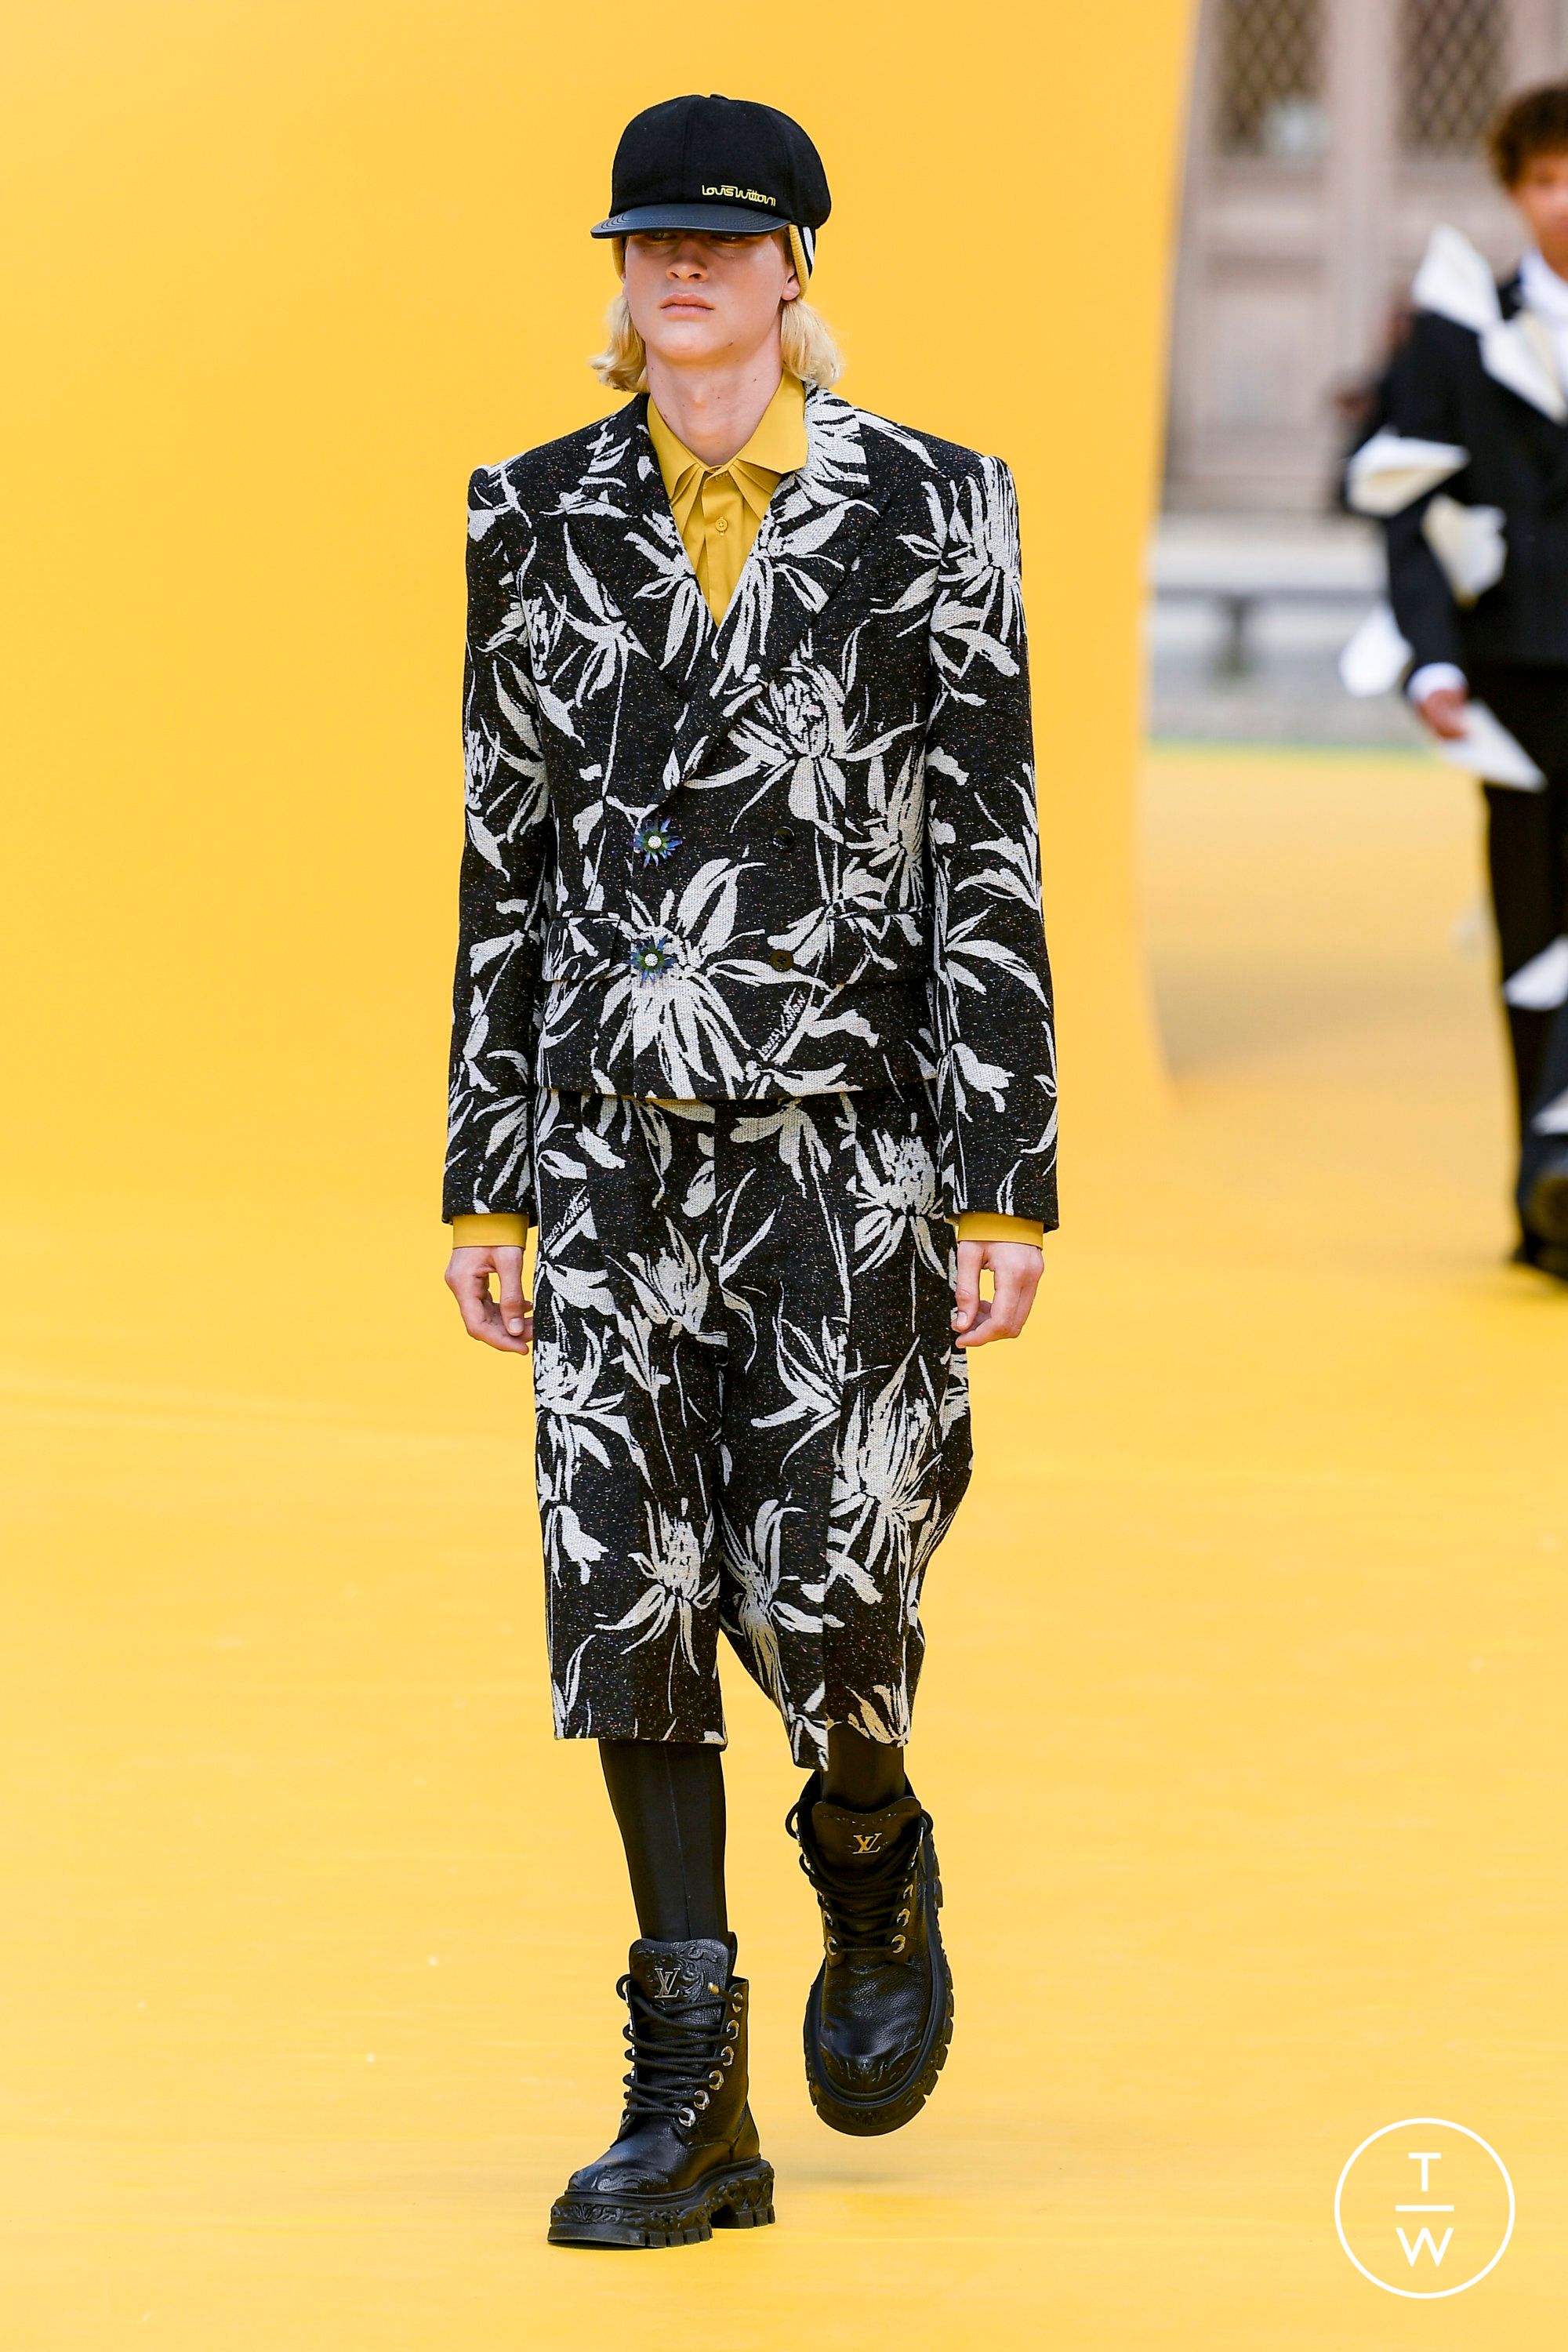 Louis Vuitton SS21 menswear #5 - Tagwalk: The Fashion Search Engine